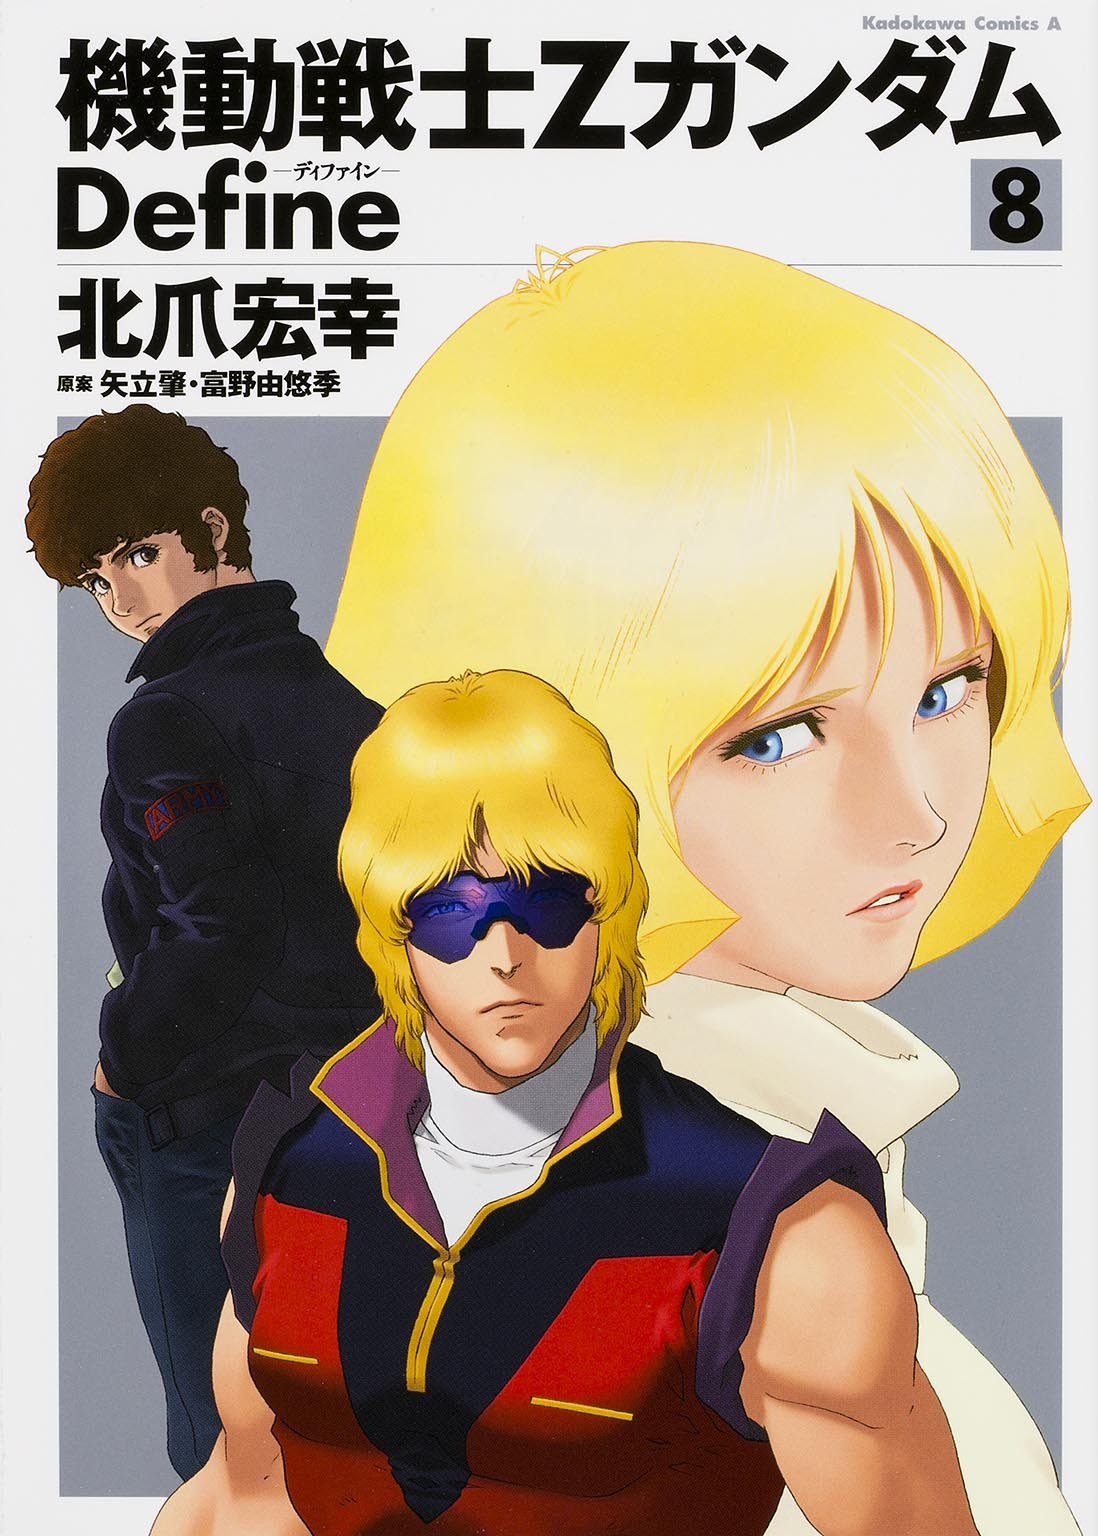 Mobile Suit Zeta Gundam Define #8 / Comic